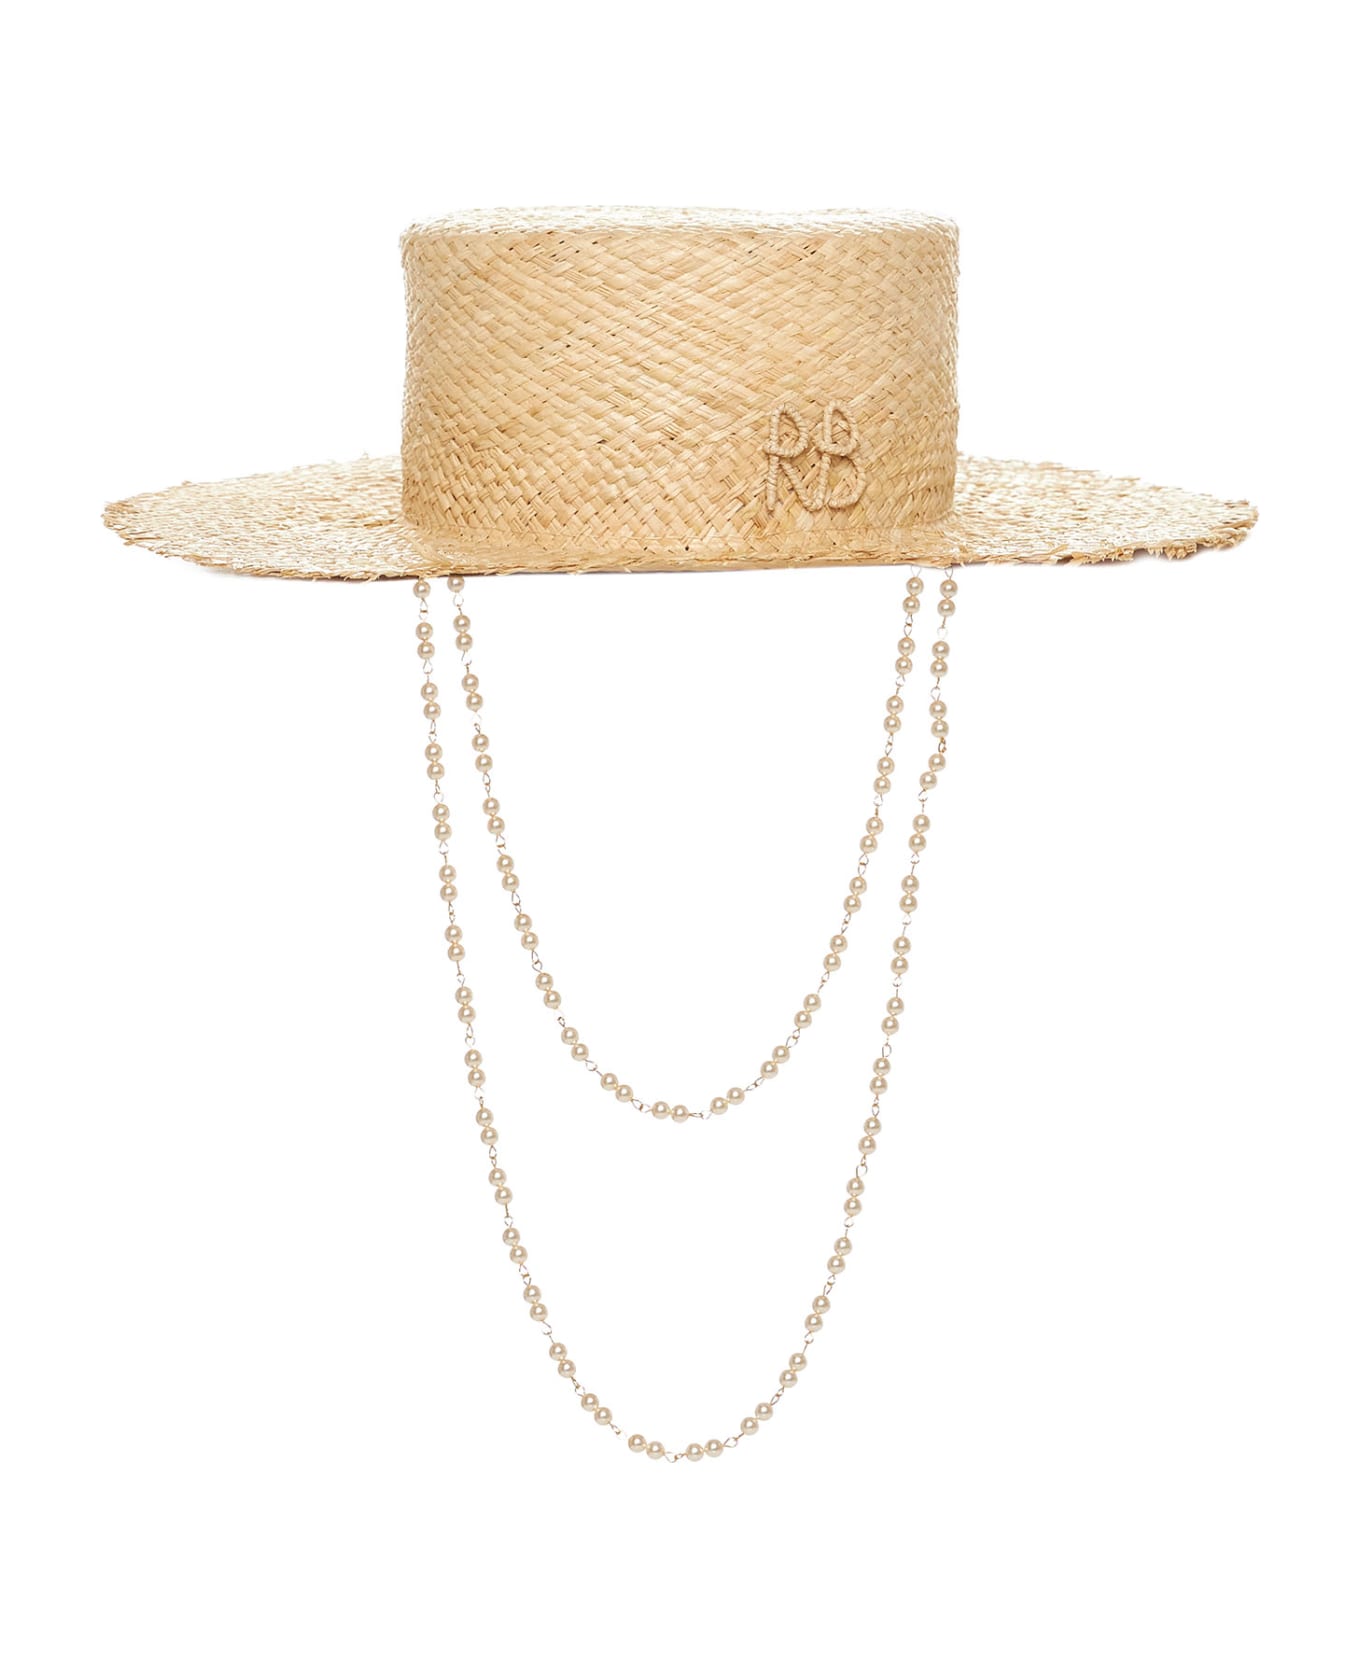 Ruslan Baginskiy Hat - Natural straw 帽子